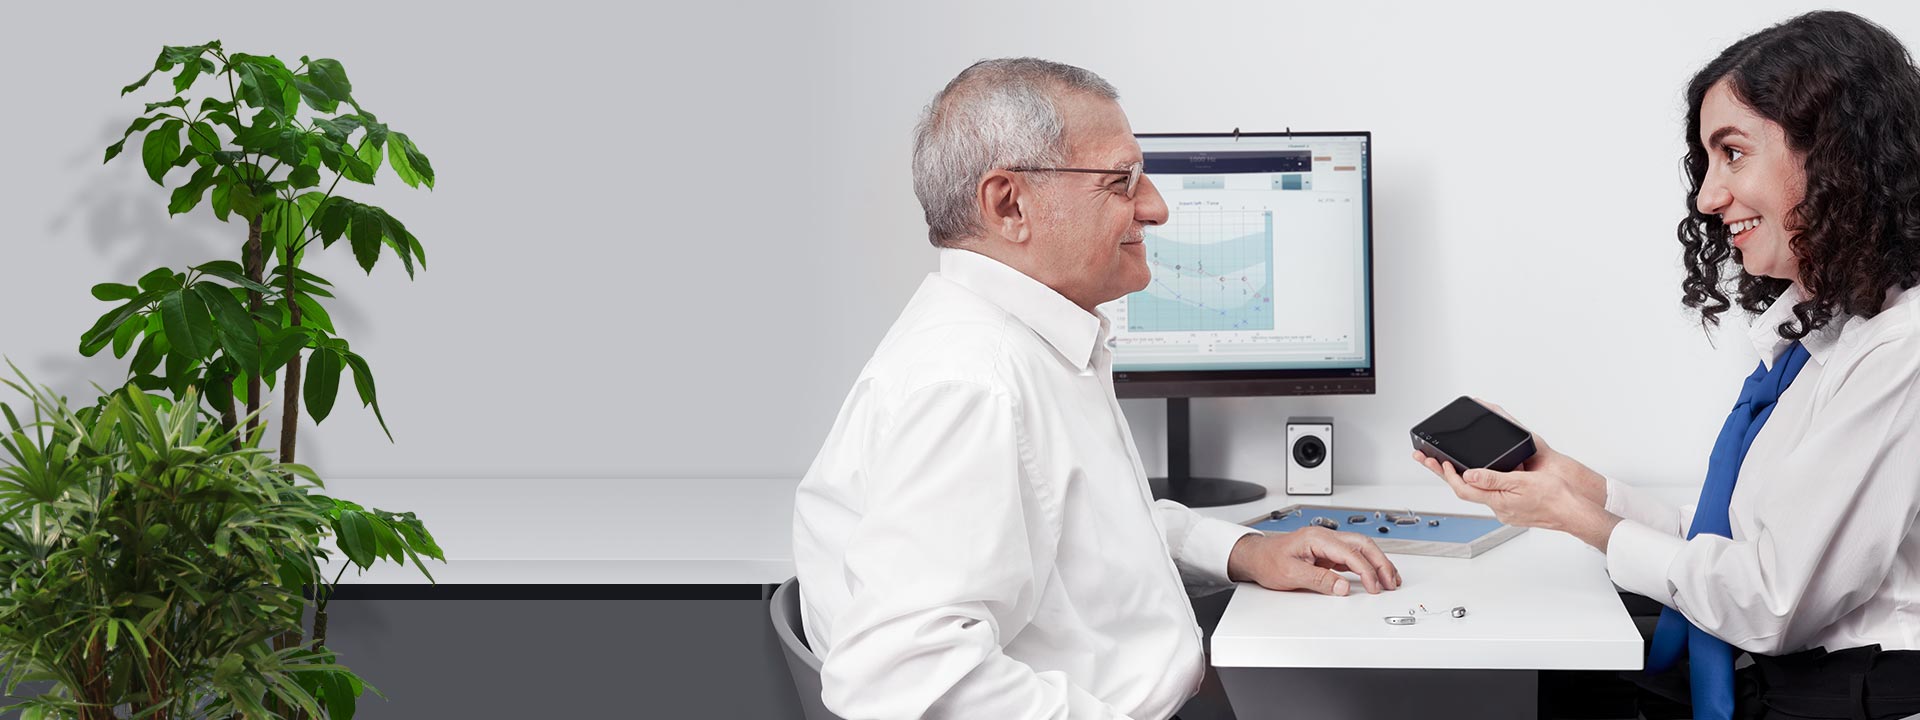 Billede viser en mand med en hørespecialist, der ser på tilbehør til høreapparater 